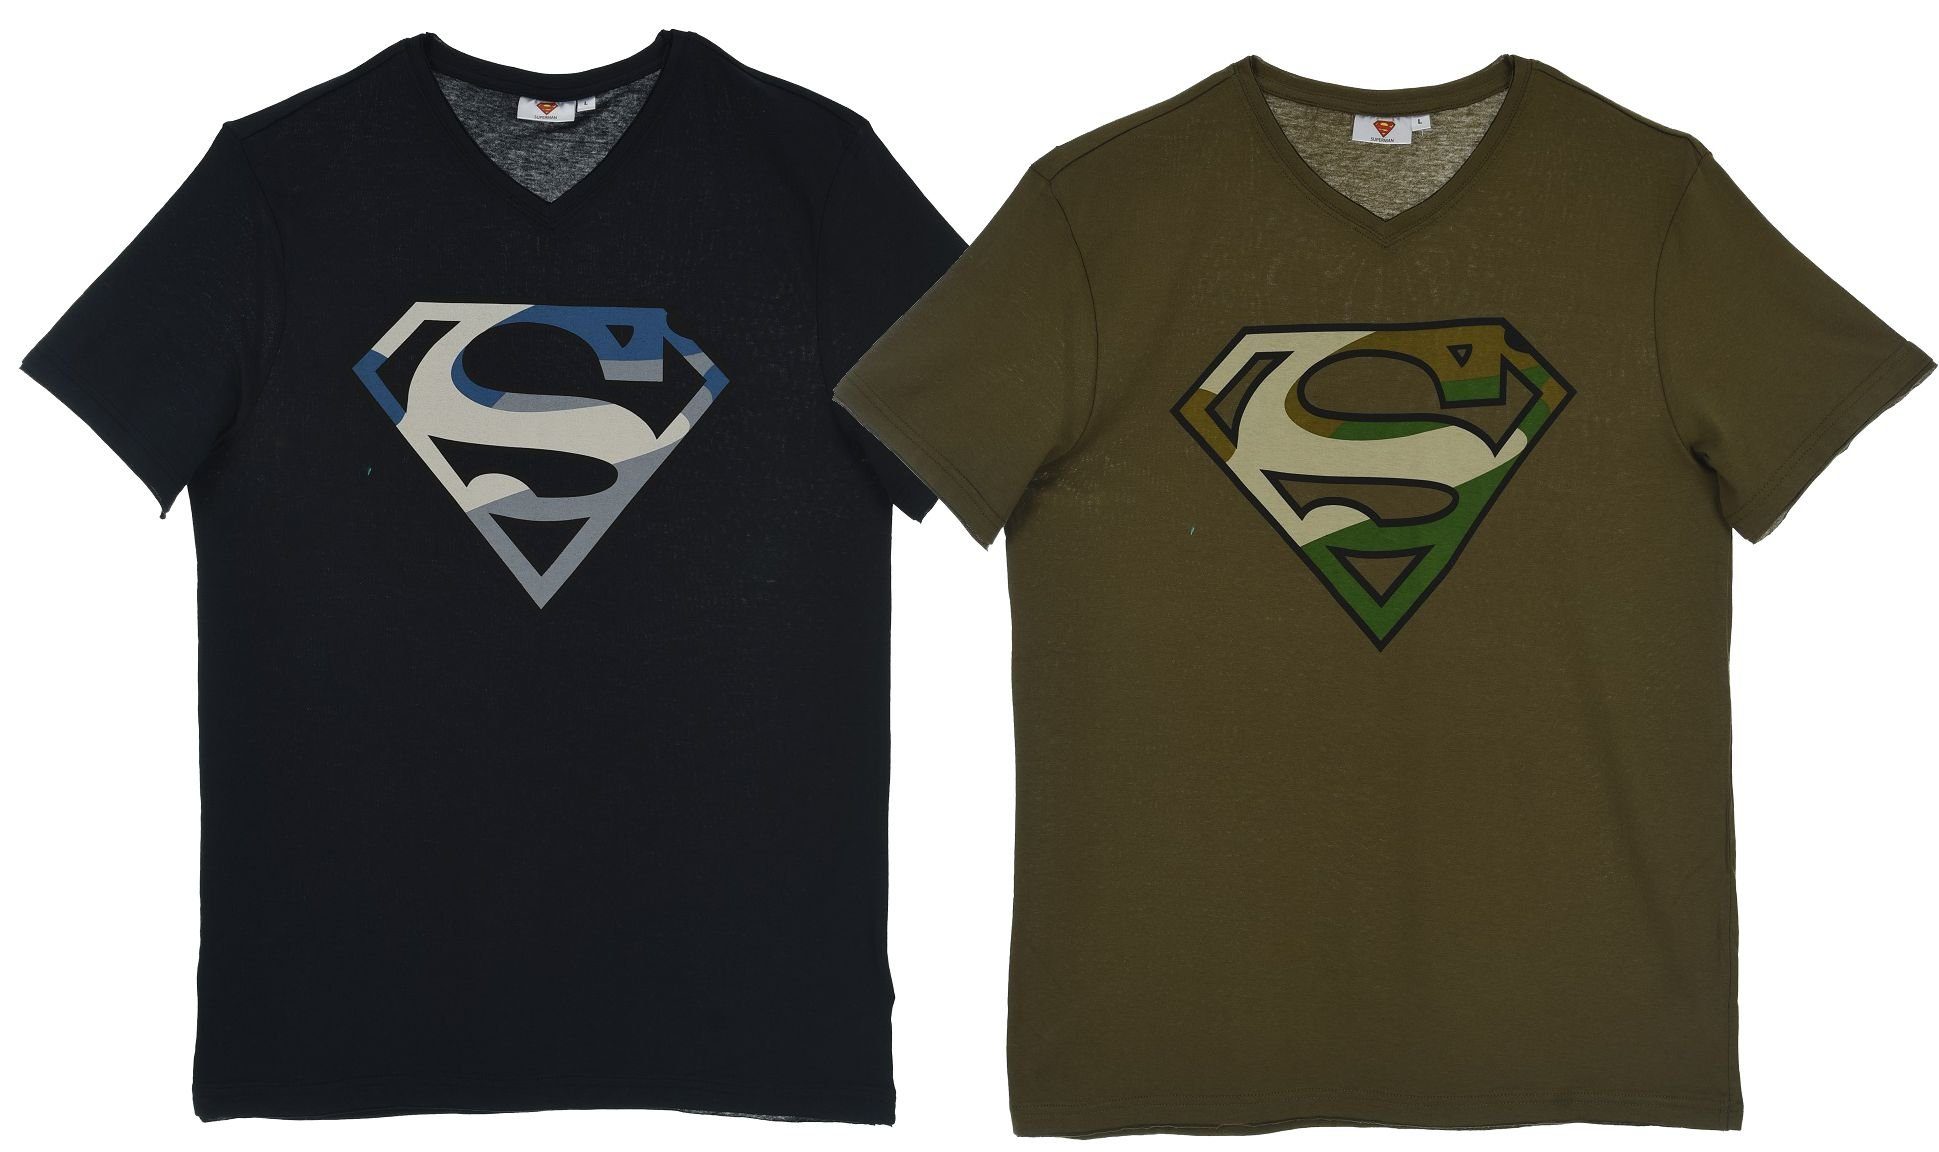 Superman T-Shirt »2x SUPERMAN T-SHIRTS Set Navy + Oliv mit V-Ausschnitt  Jugendliche + Erwachsene Gr. S M L XL« online kaufen | OTTO